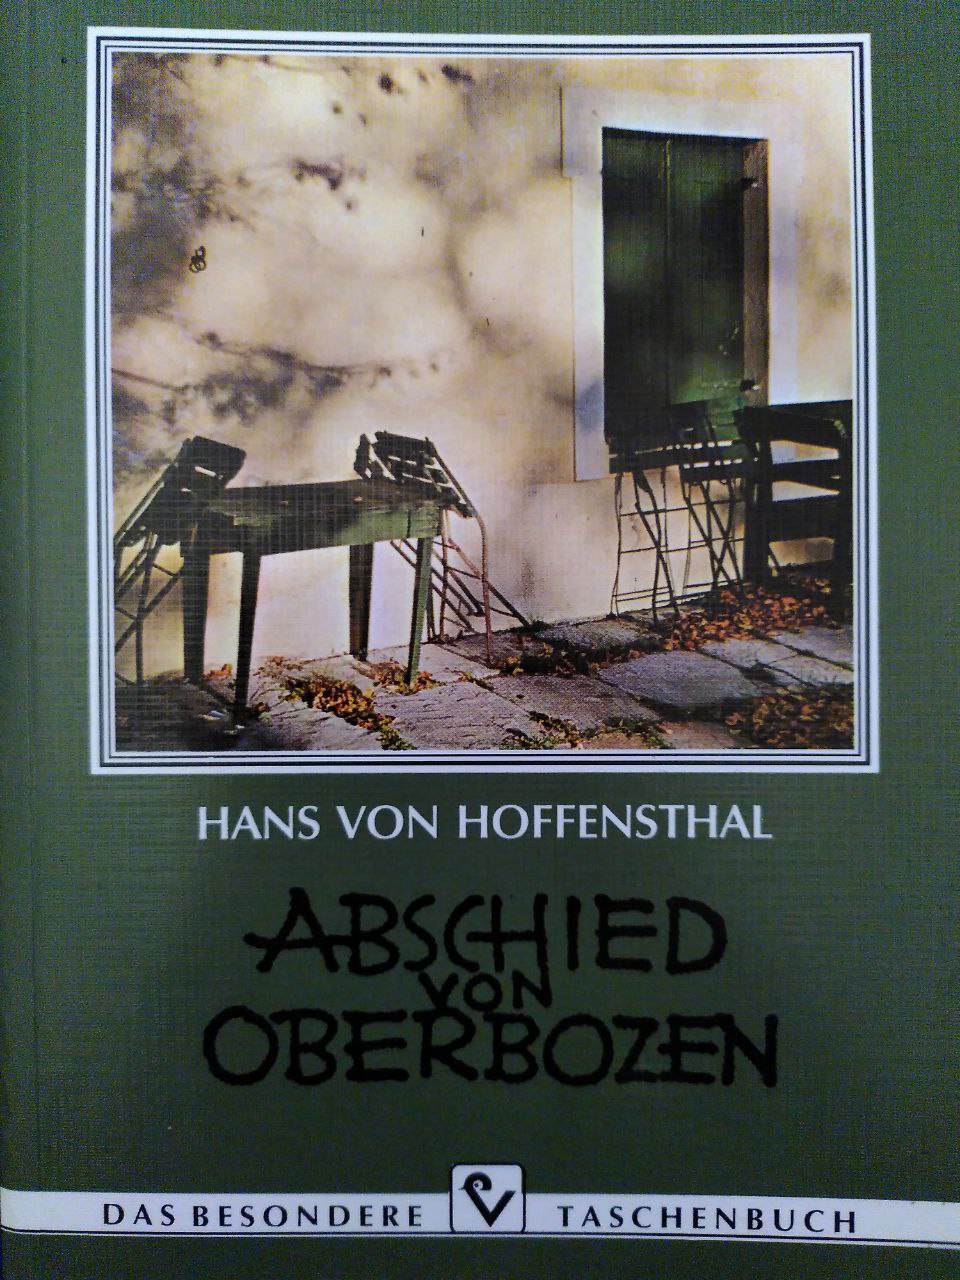 Hans von Hoffensthal: Abschied von Oberbozen (Paperback, German language, Verl.-Anst. Athesia)